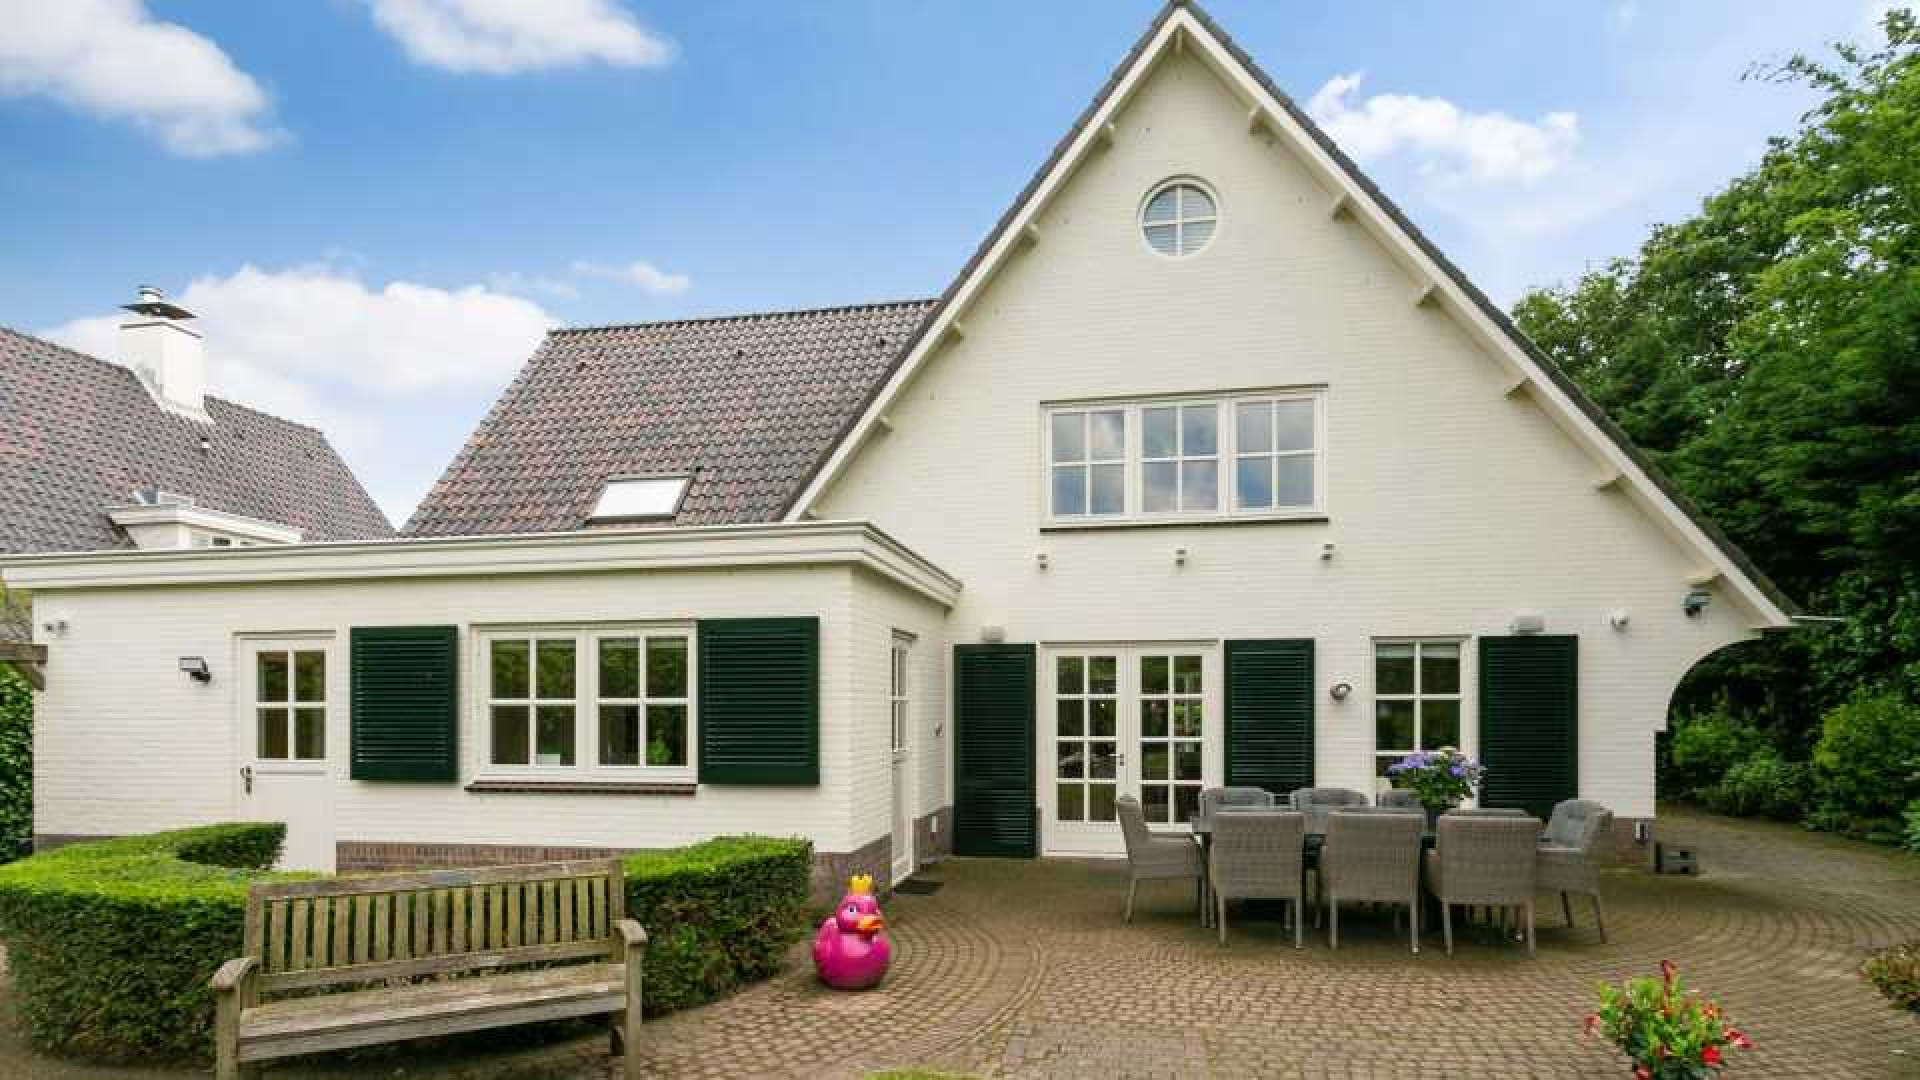 Ex vrouw van Dirk Kuijt koopt net als Dirk luxe villa op landgoed in Noordwijk. Zie foto's 12